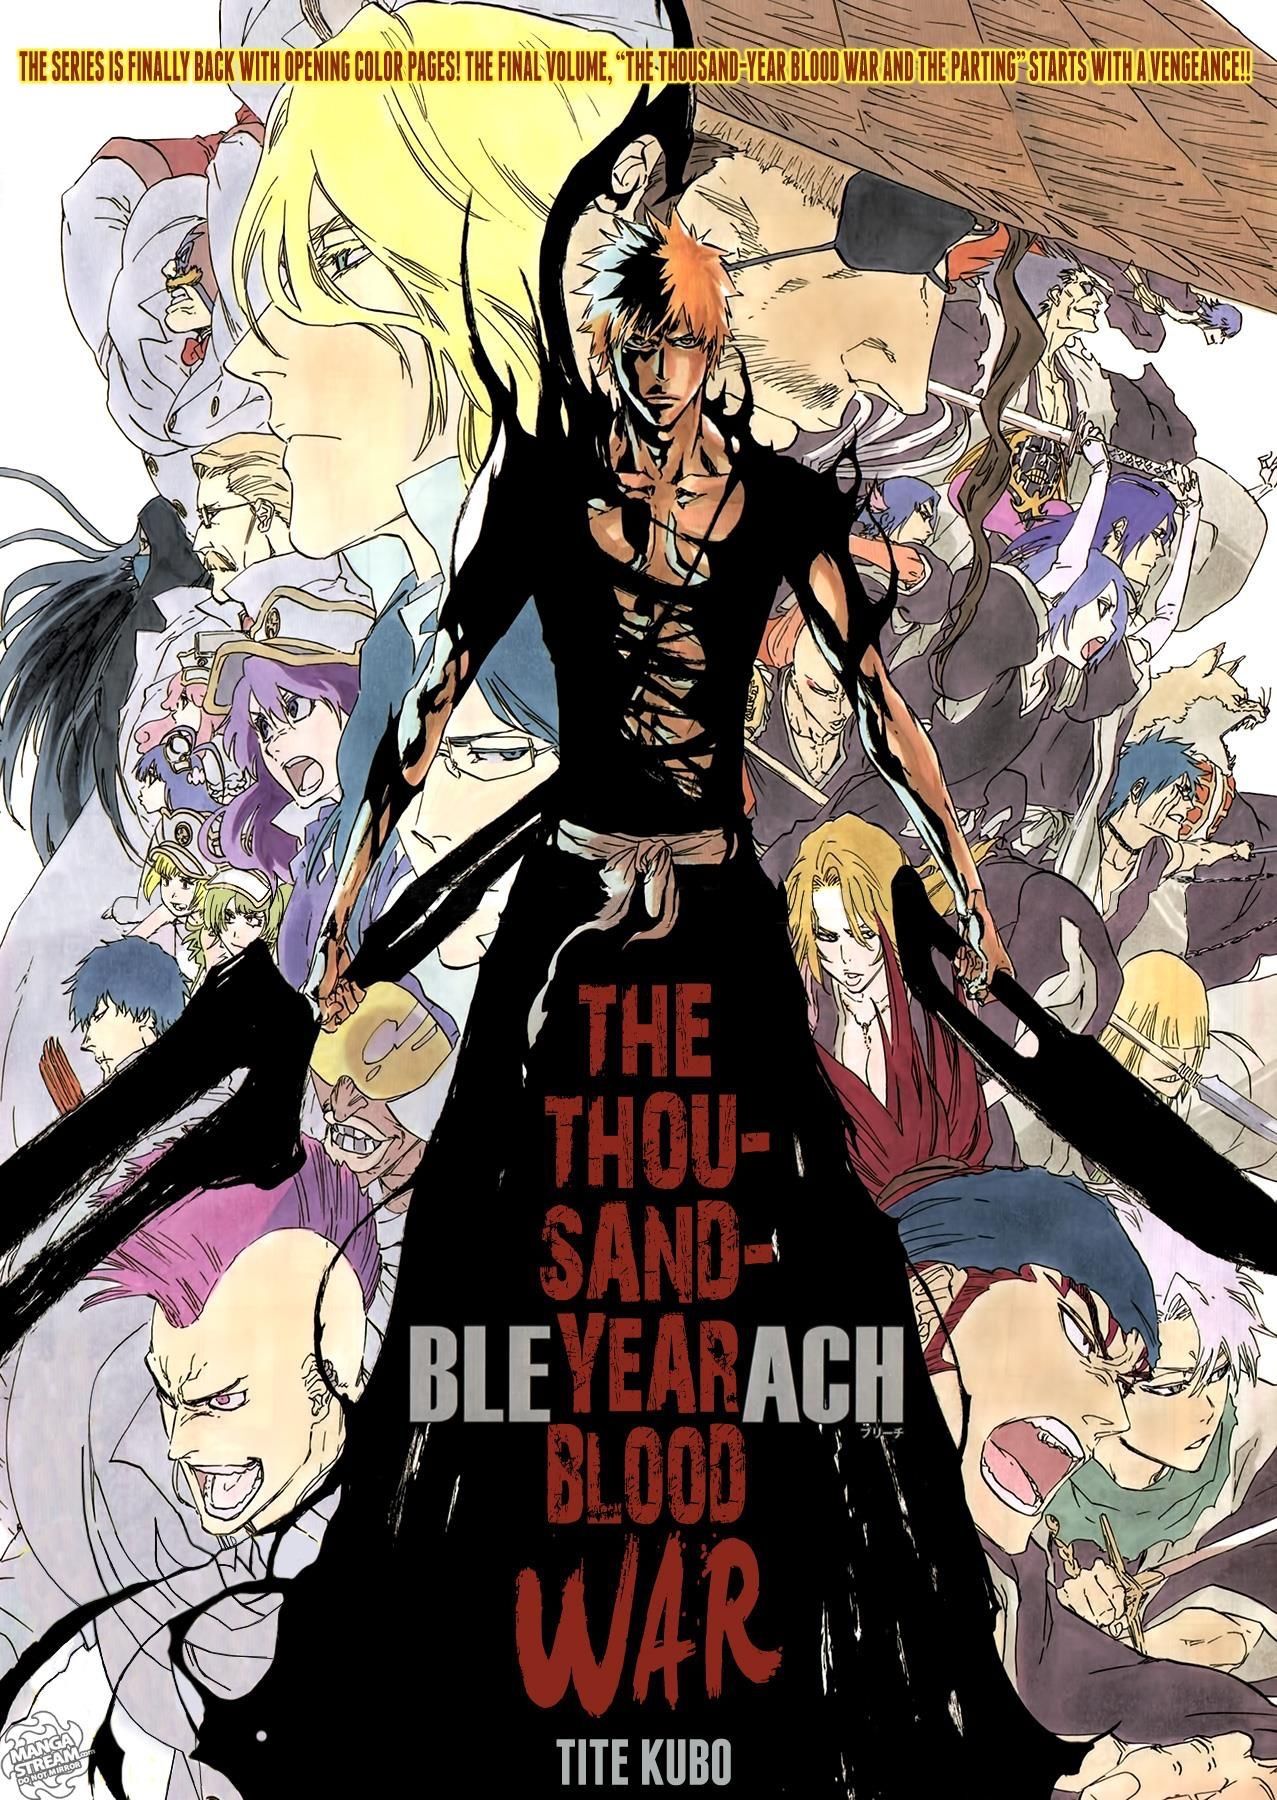 Bleach anime return Bleach anime art Bleach anime ichigo